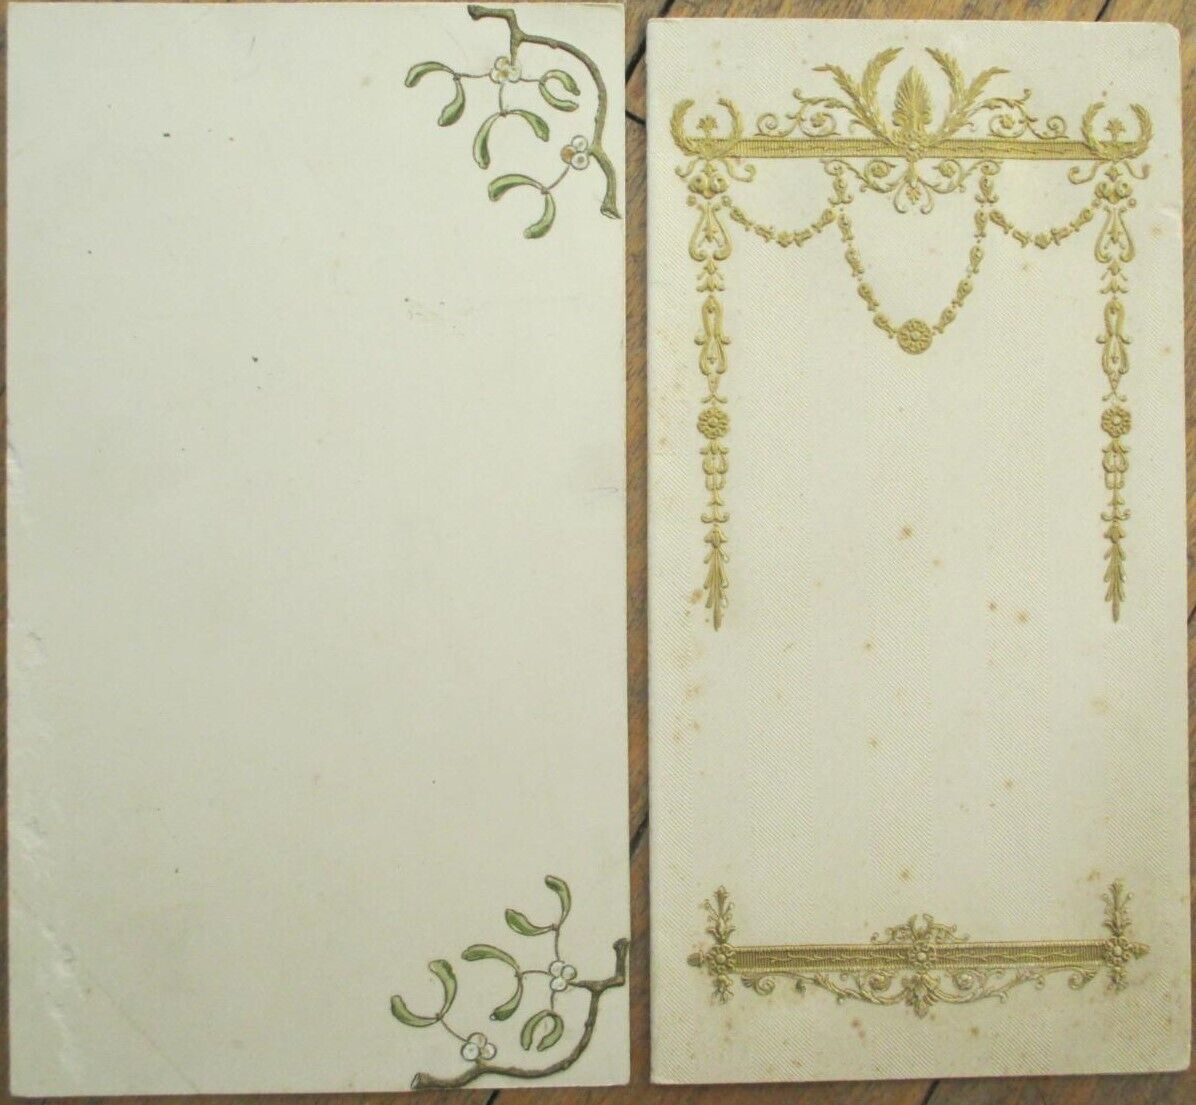 French Menu Blank 1910 Pair, Art Nouveau Clover, Gold Vignettes, Folding